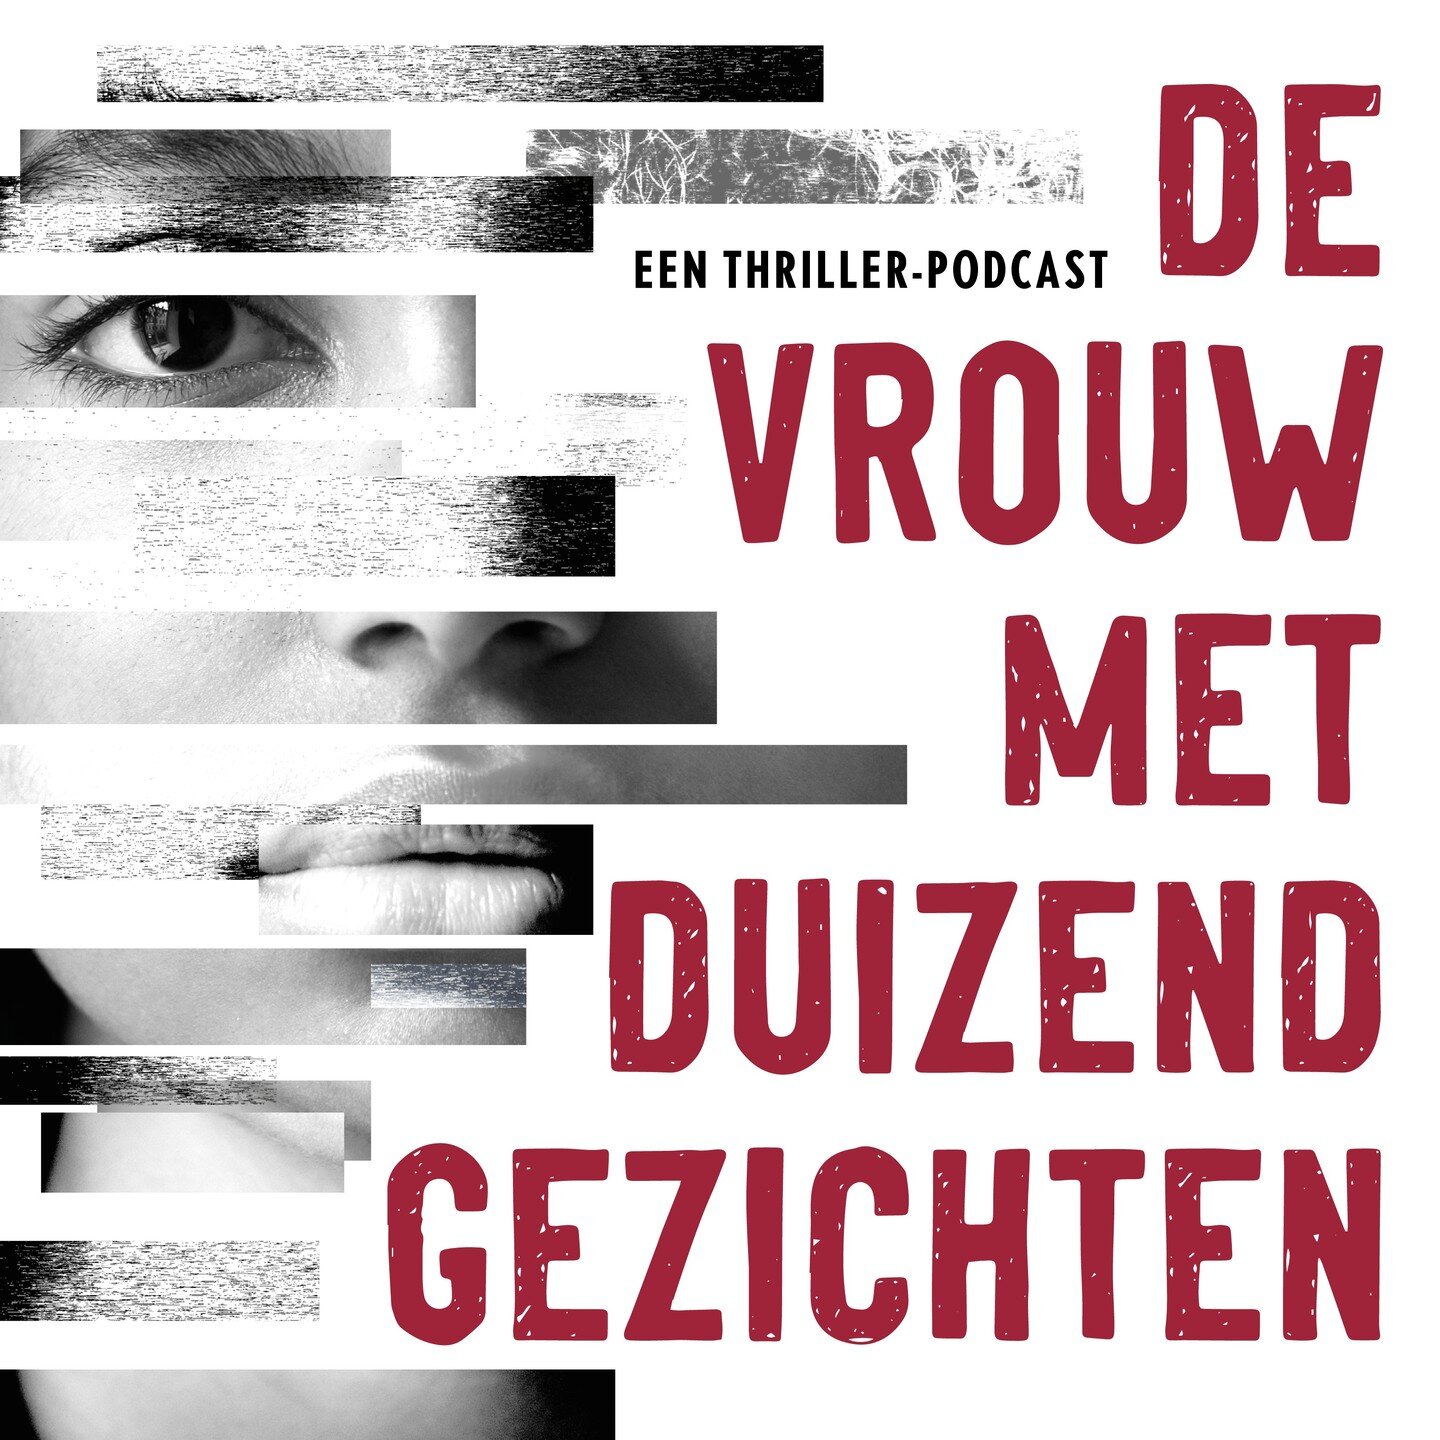 !!COVER REVEAL NUMMER 2!!

In de weken voor mijn thriller debuut 'De man met Duizend Gezichten' in de boekwinkels ligt, komt mijn eerste Nederlandse podcast uit sinds THE DECA TAPES:

De Vrouw met Duizend gezichten. 

Een thriller podcast gespeeld do